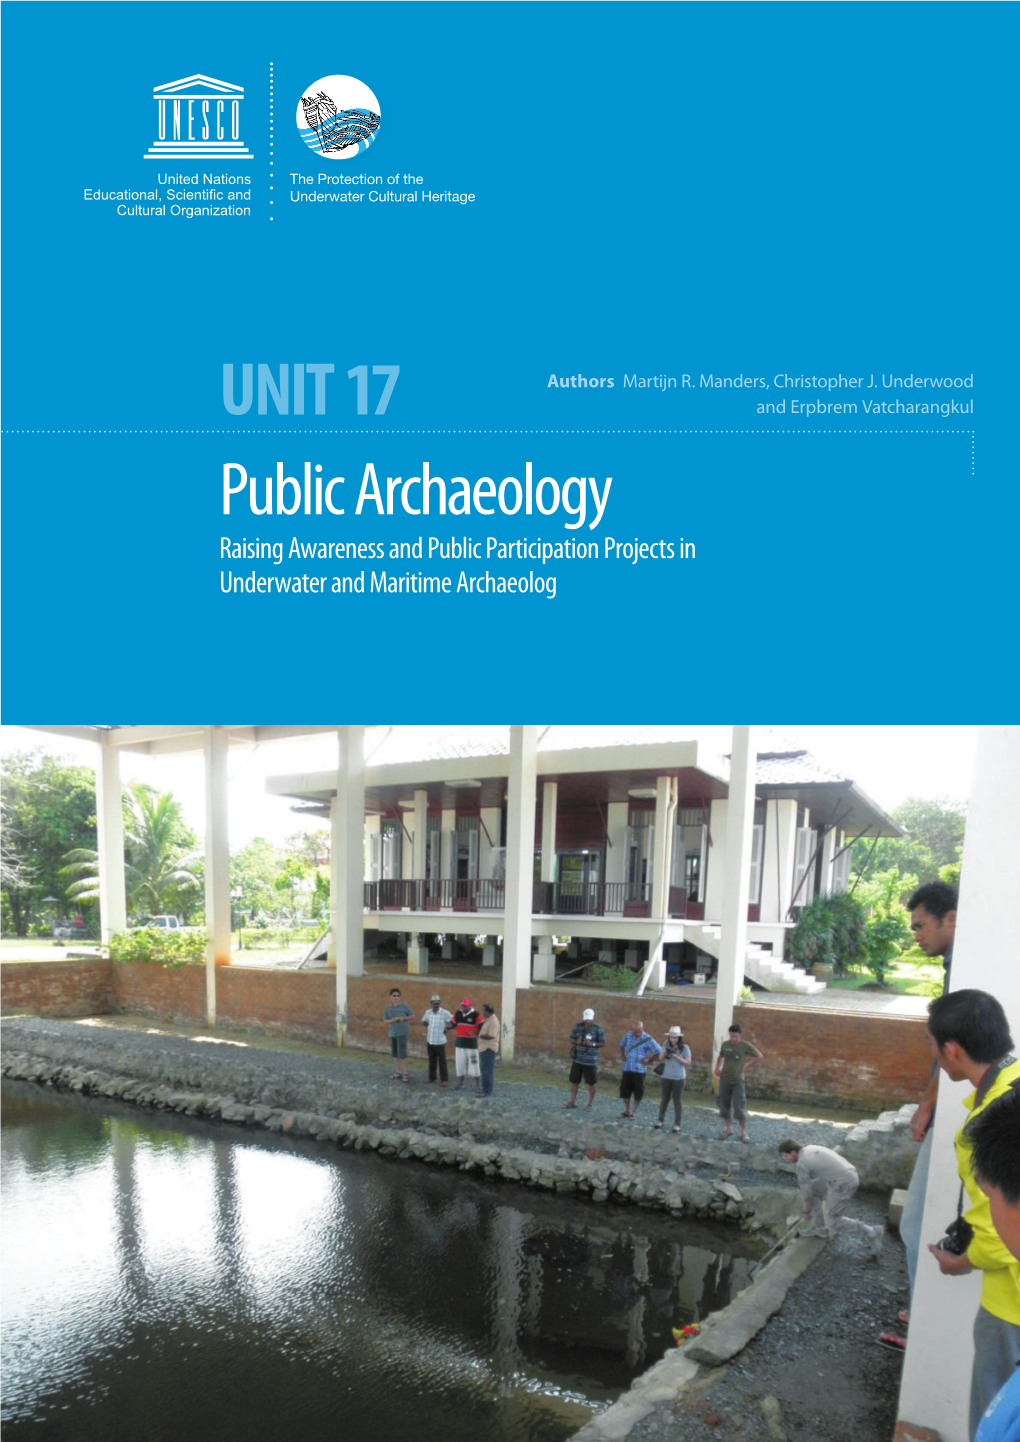 Unit 17 Public Archaeology